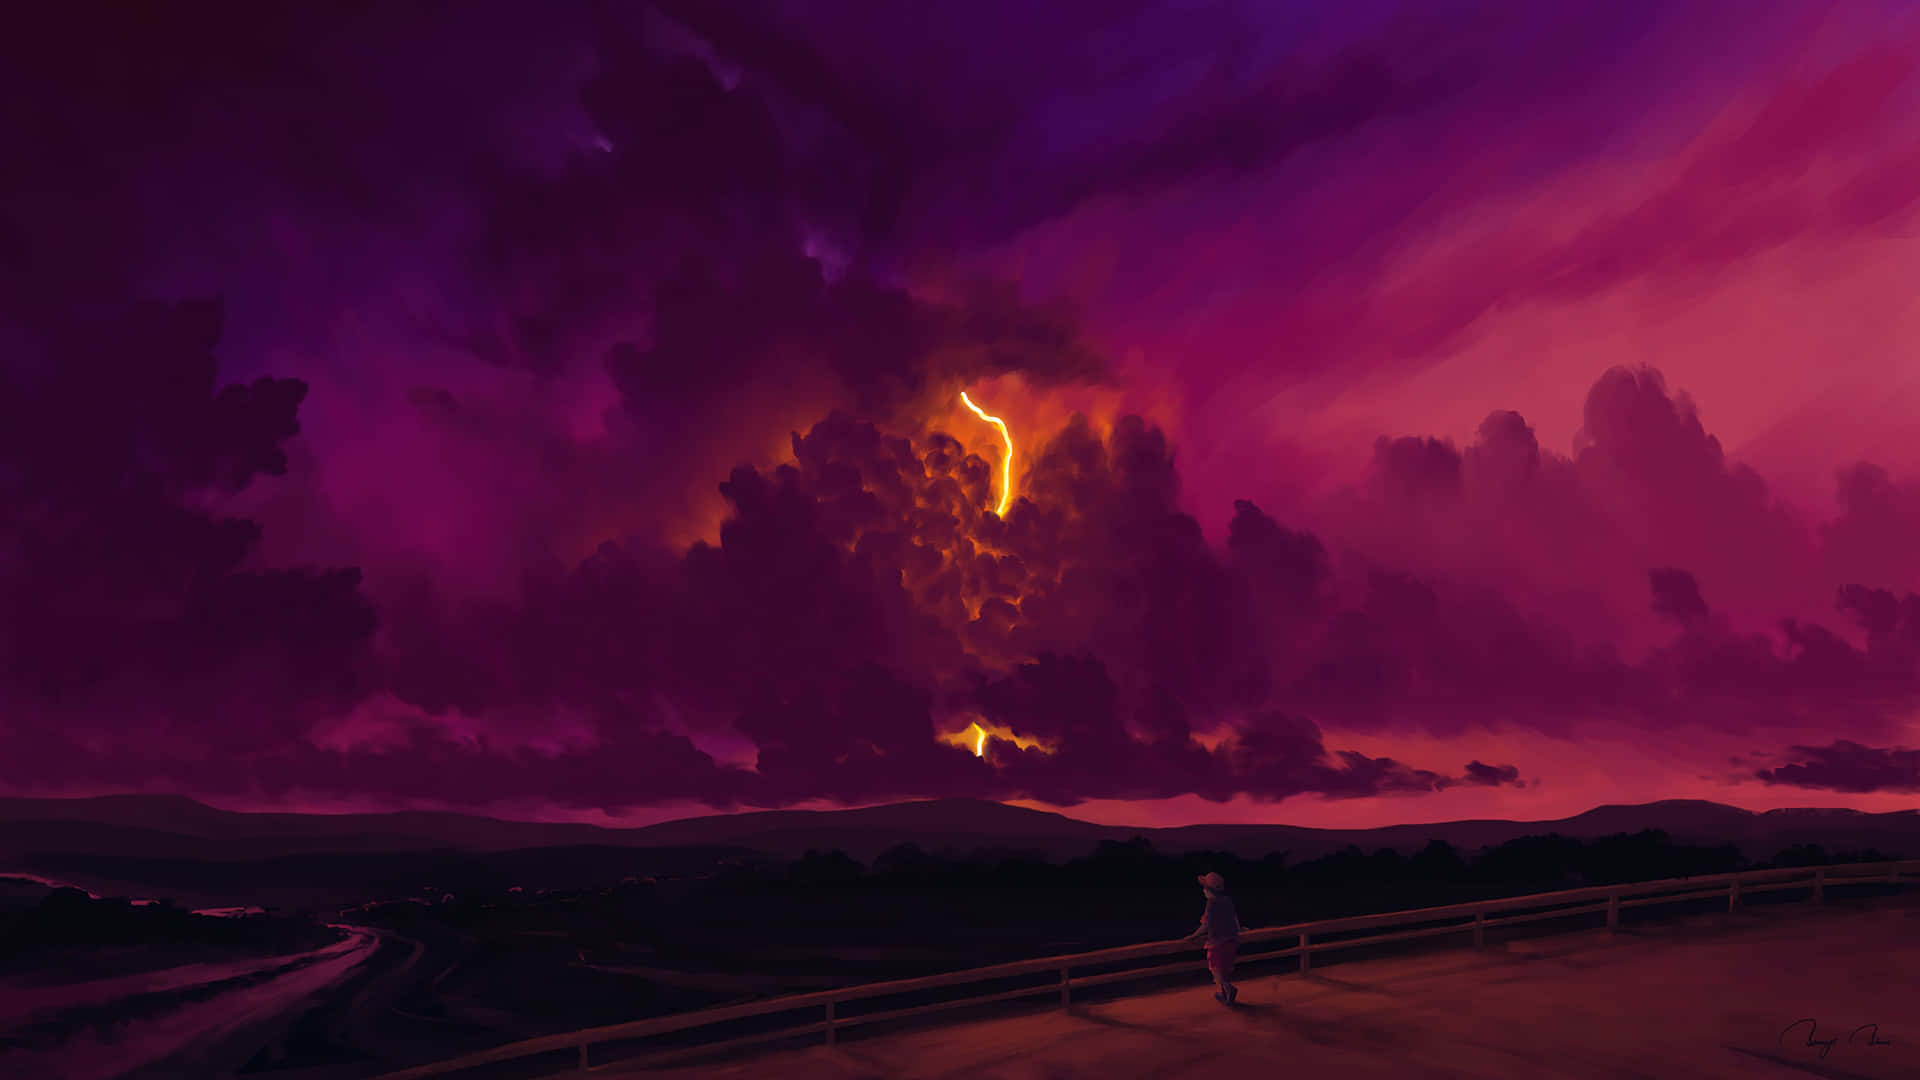 Enmörk Och Mystisk Anime-landskap. Wallpaper